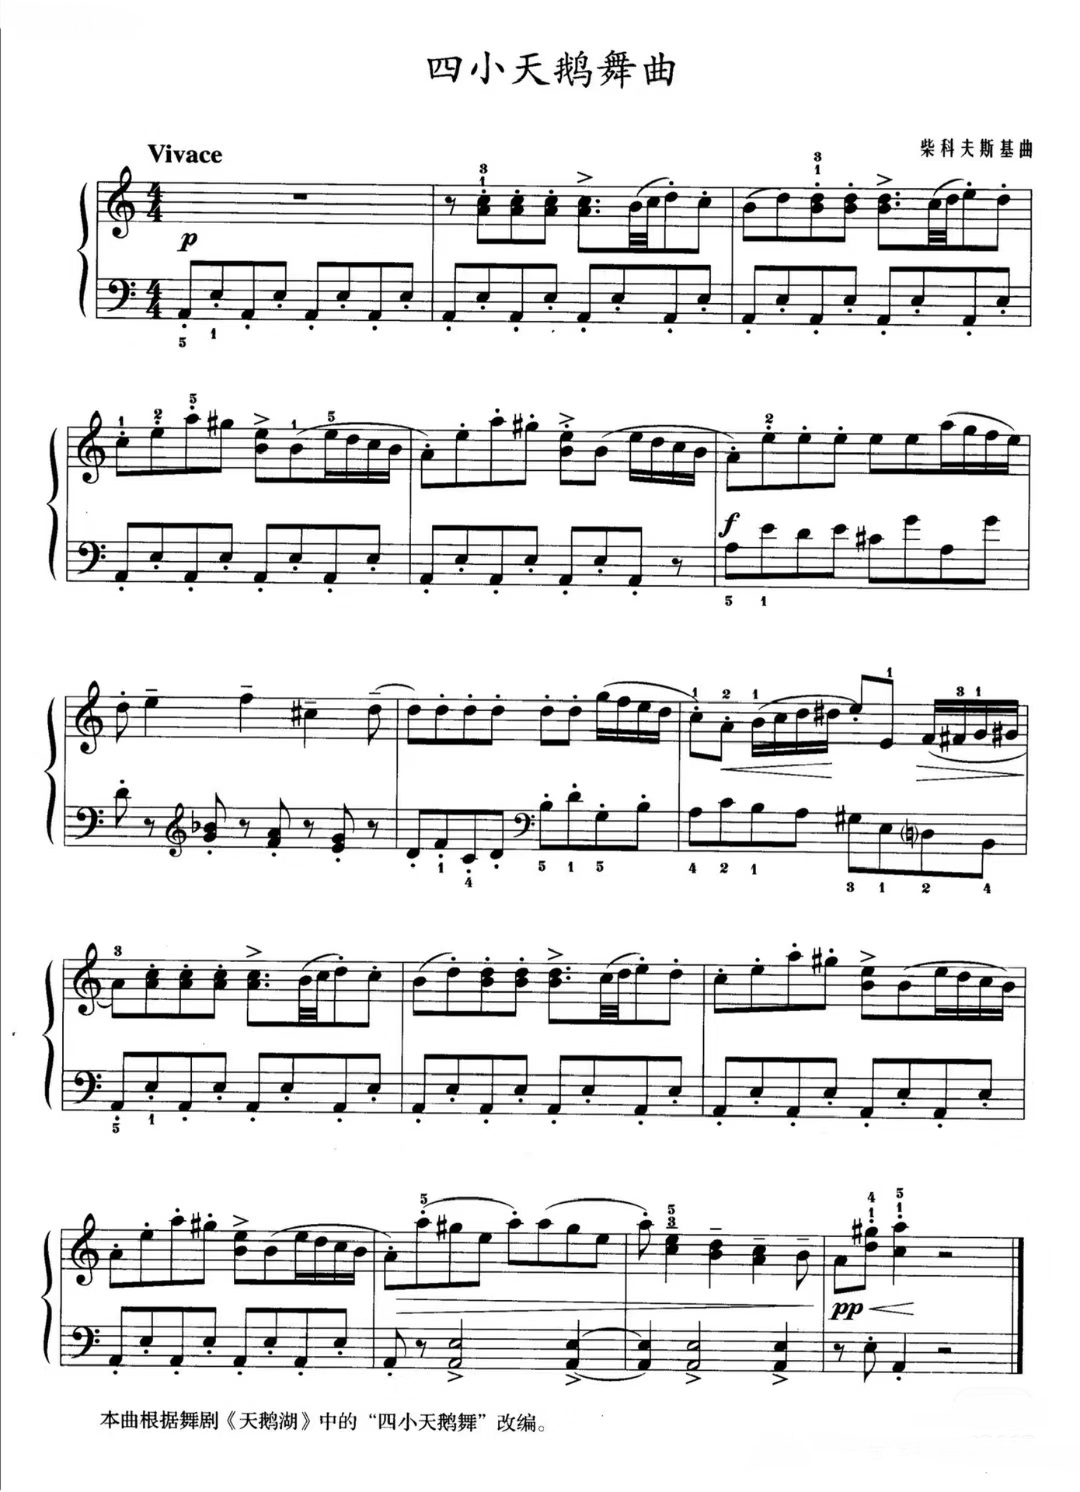 《四小天鹅》的钢琴谱钢琴曲谱 - 柴可夫斯基